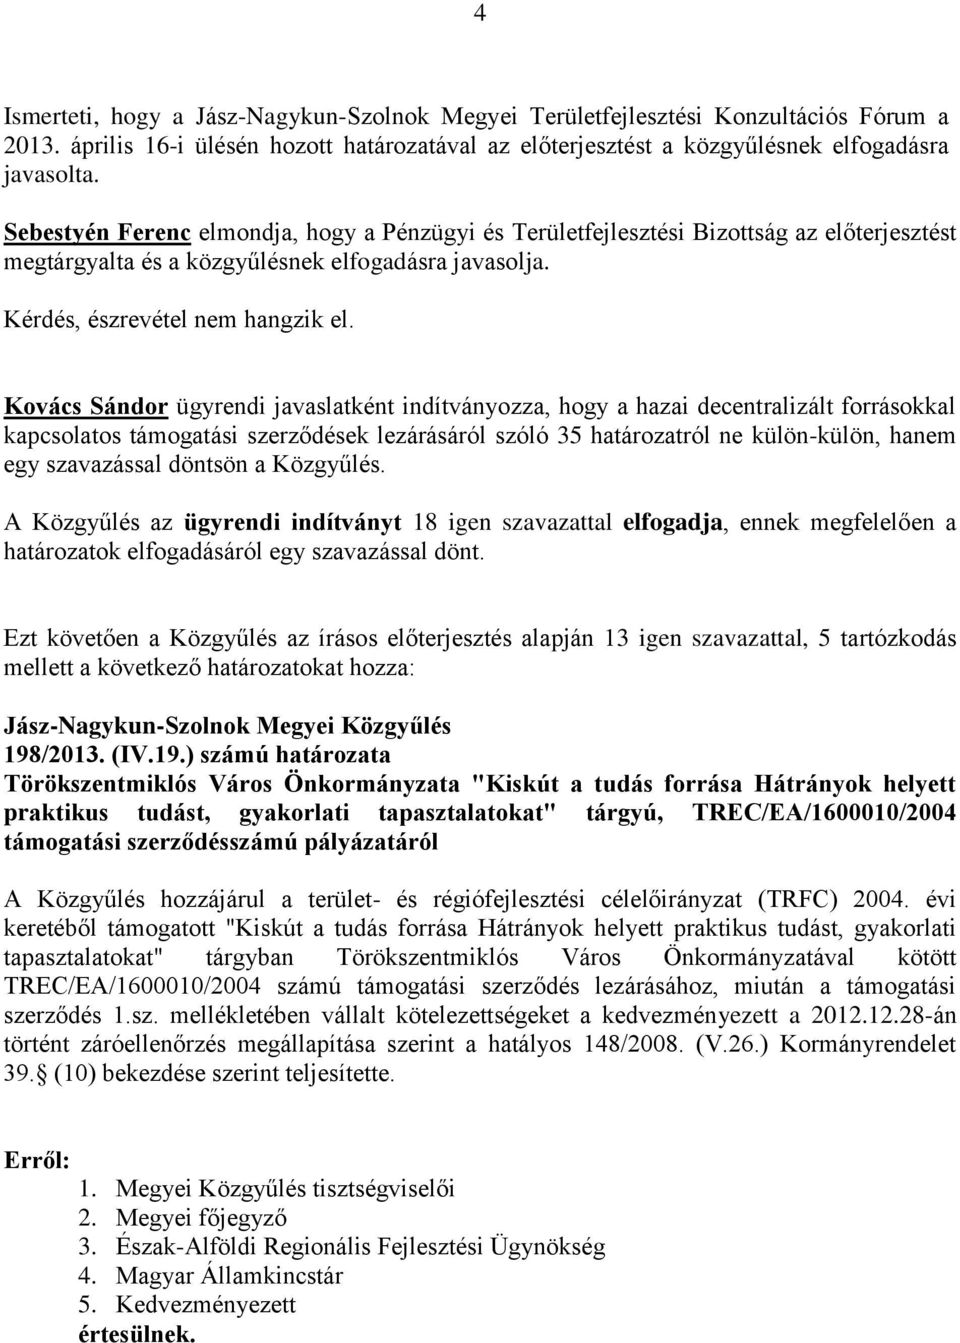 Kovács Sándor ügyrendi javaslatként indítványozza, hogy a hazai decentralizált forrásokkal kapcsolatos támogatási szerződések lezárásáról szóló 35 határozatról ne külön-külön, hanem egy szavazással